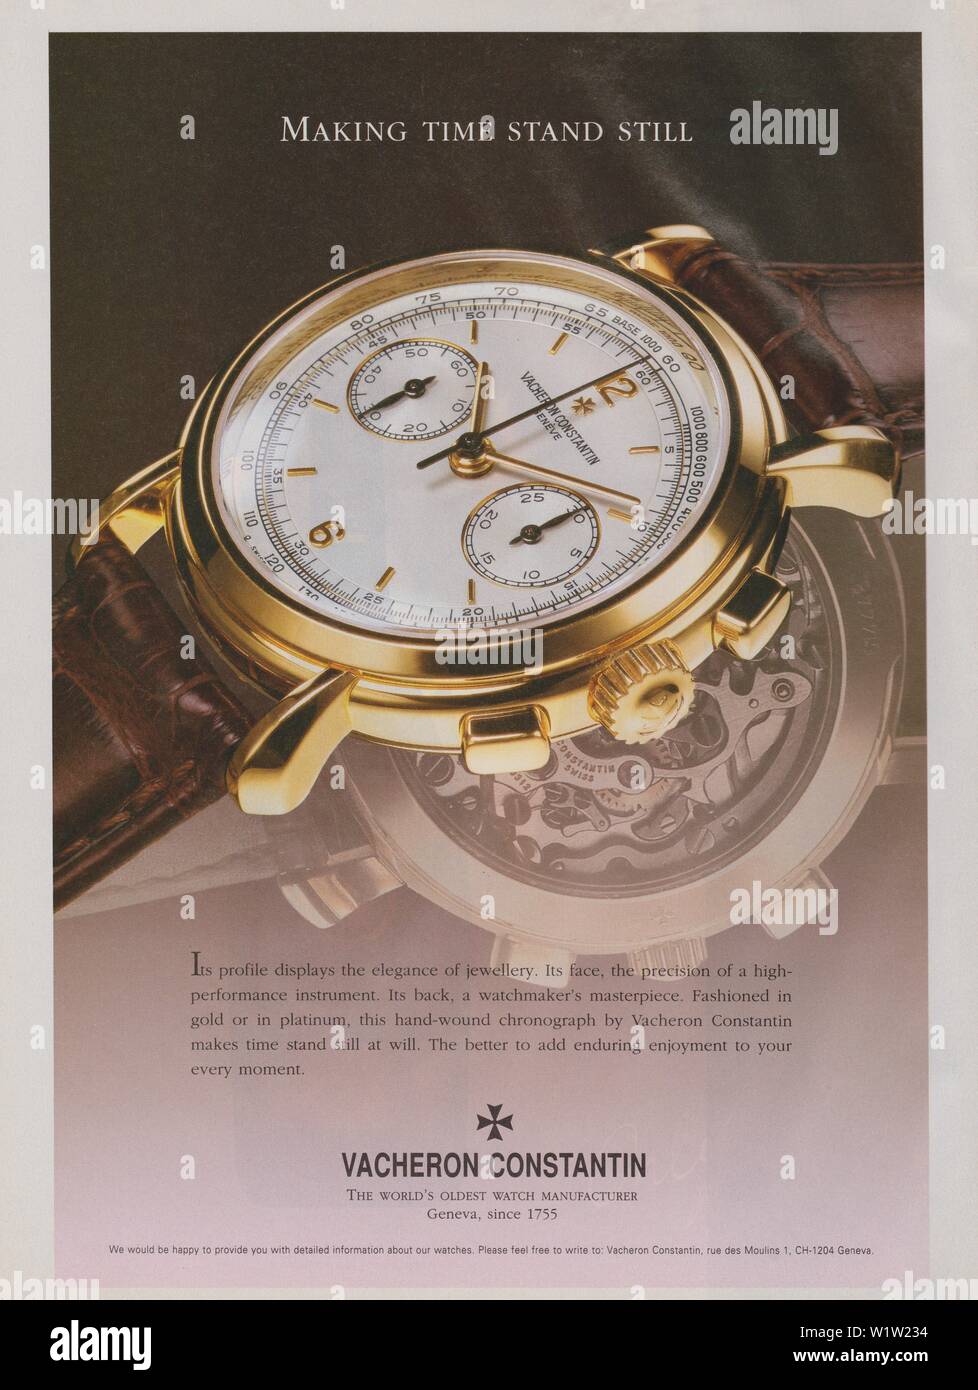 Poster pubblicitari Vacheron Constantin orologio, in magazzino carta 1997 anno, rendendo tempi Stand ancora uno slogan, un annuncio pubblicitario creativo da anni novanta Foto Stock